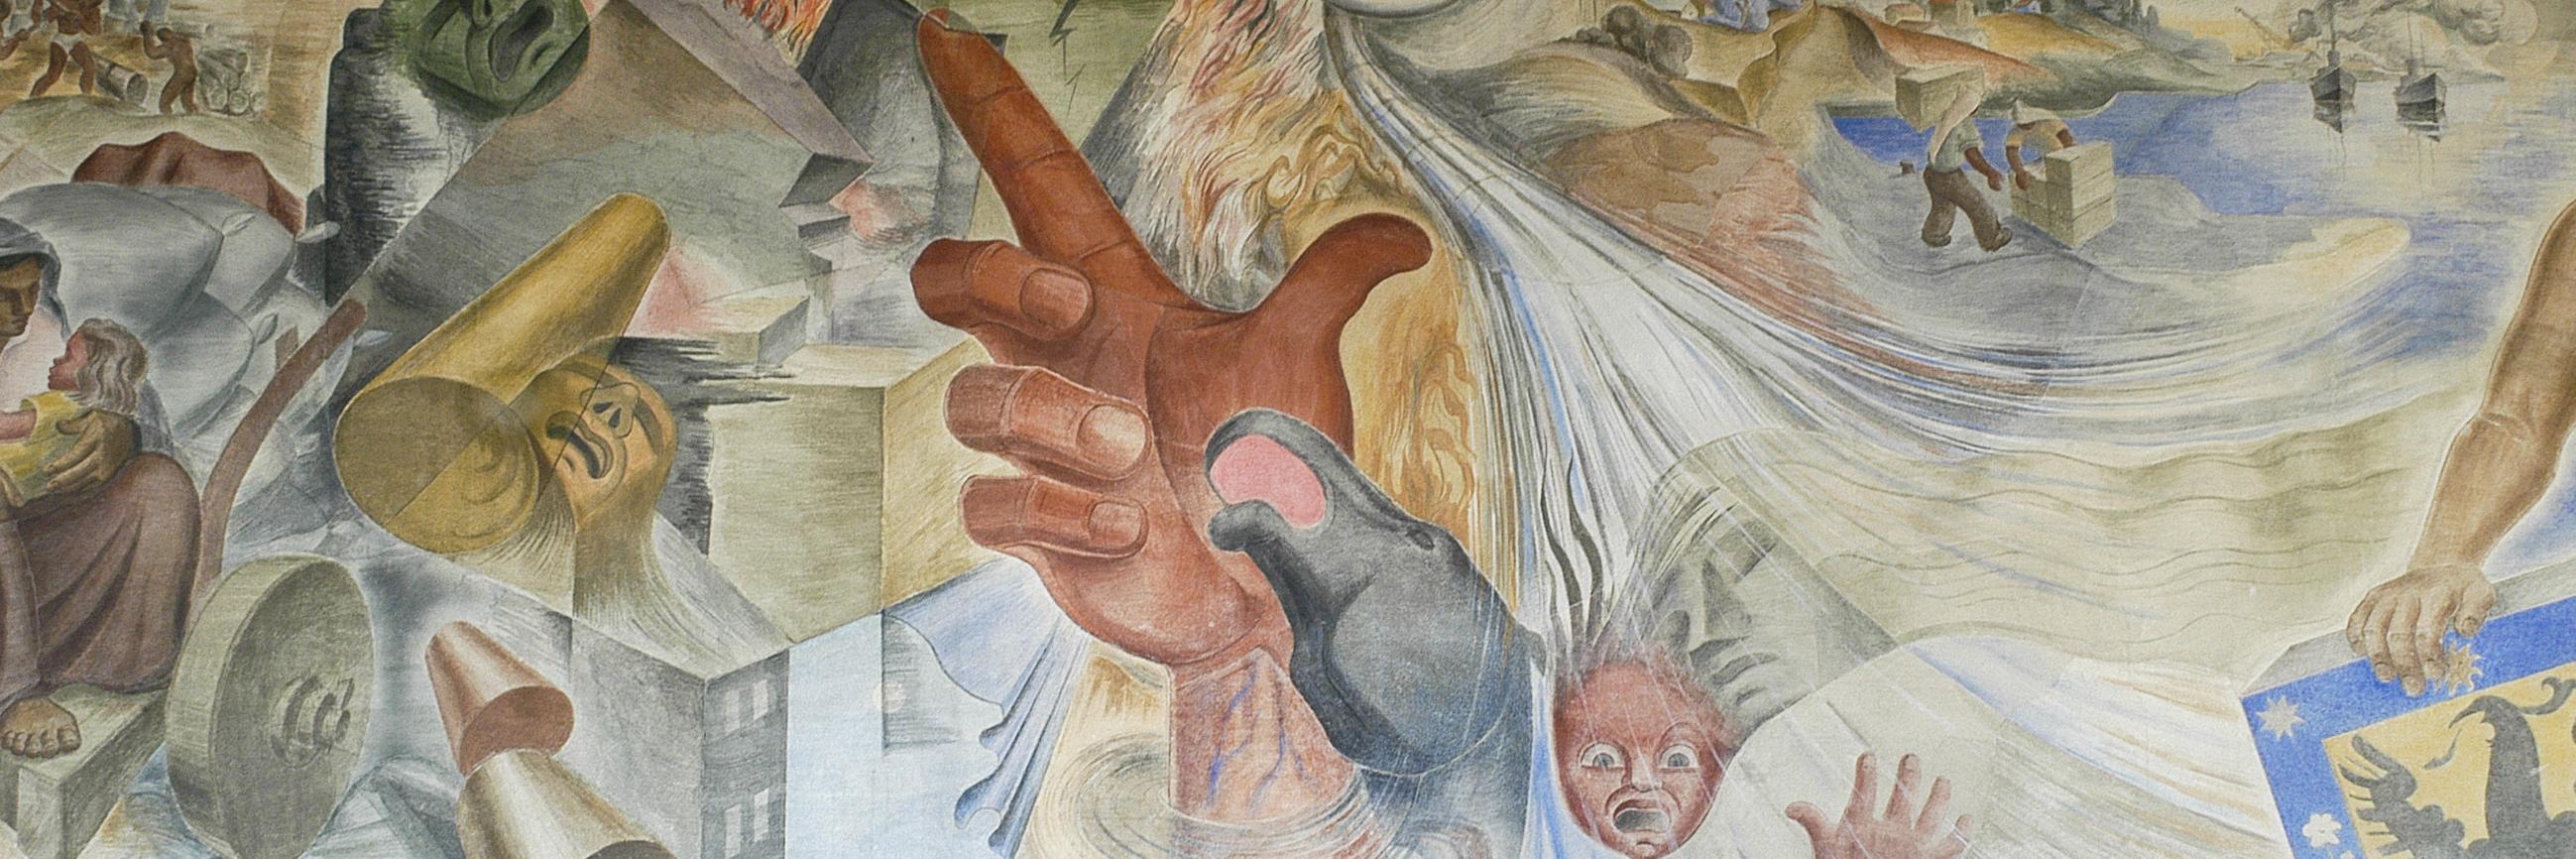 Detalle del mural “Rutas y latidos de Concepción”